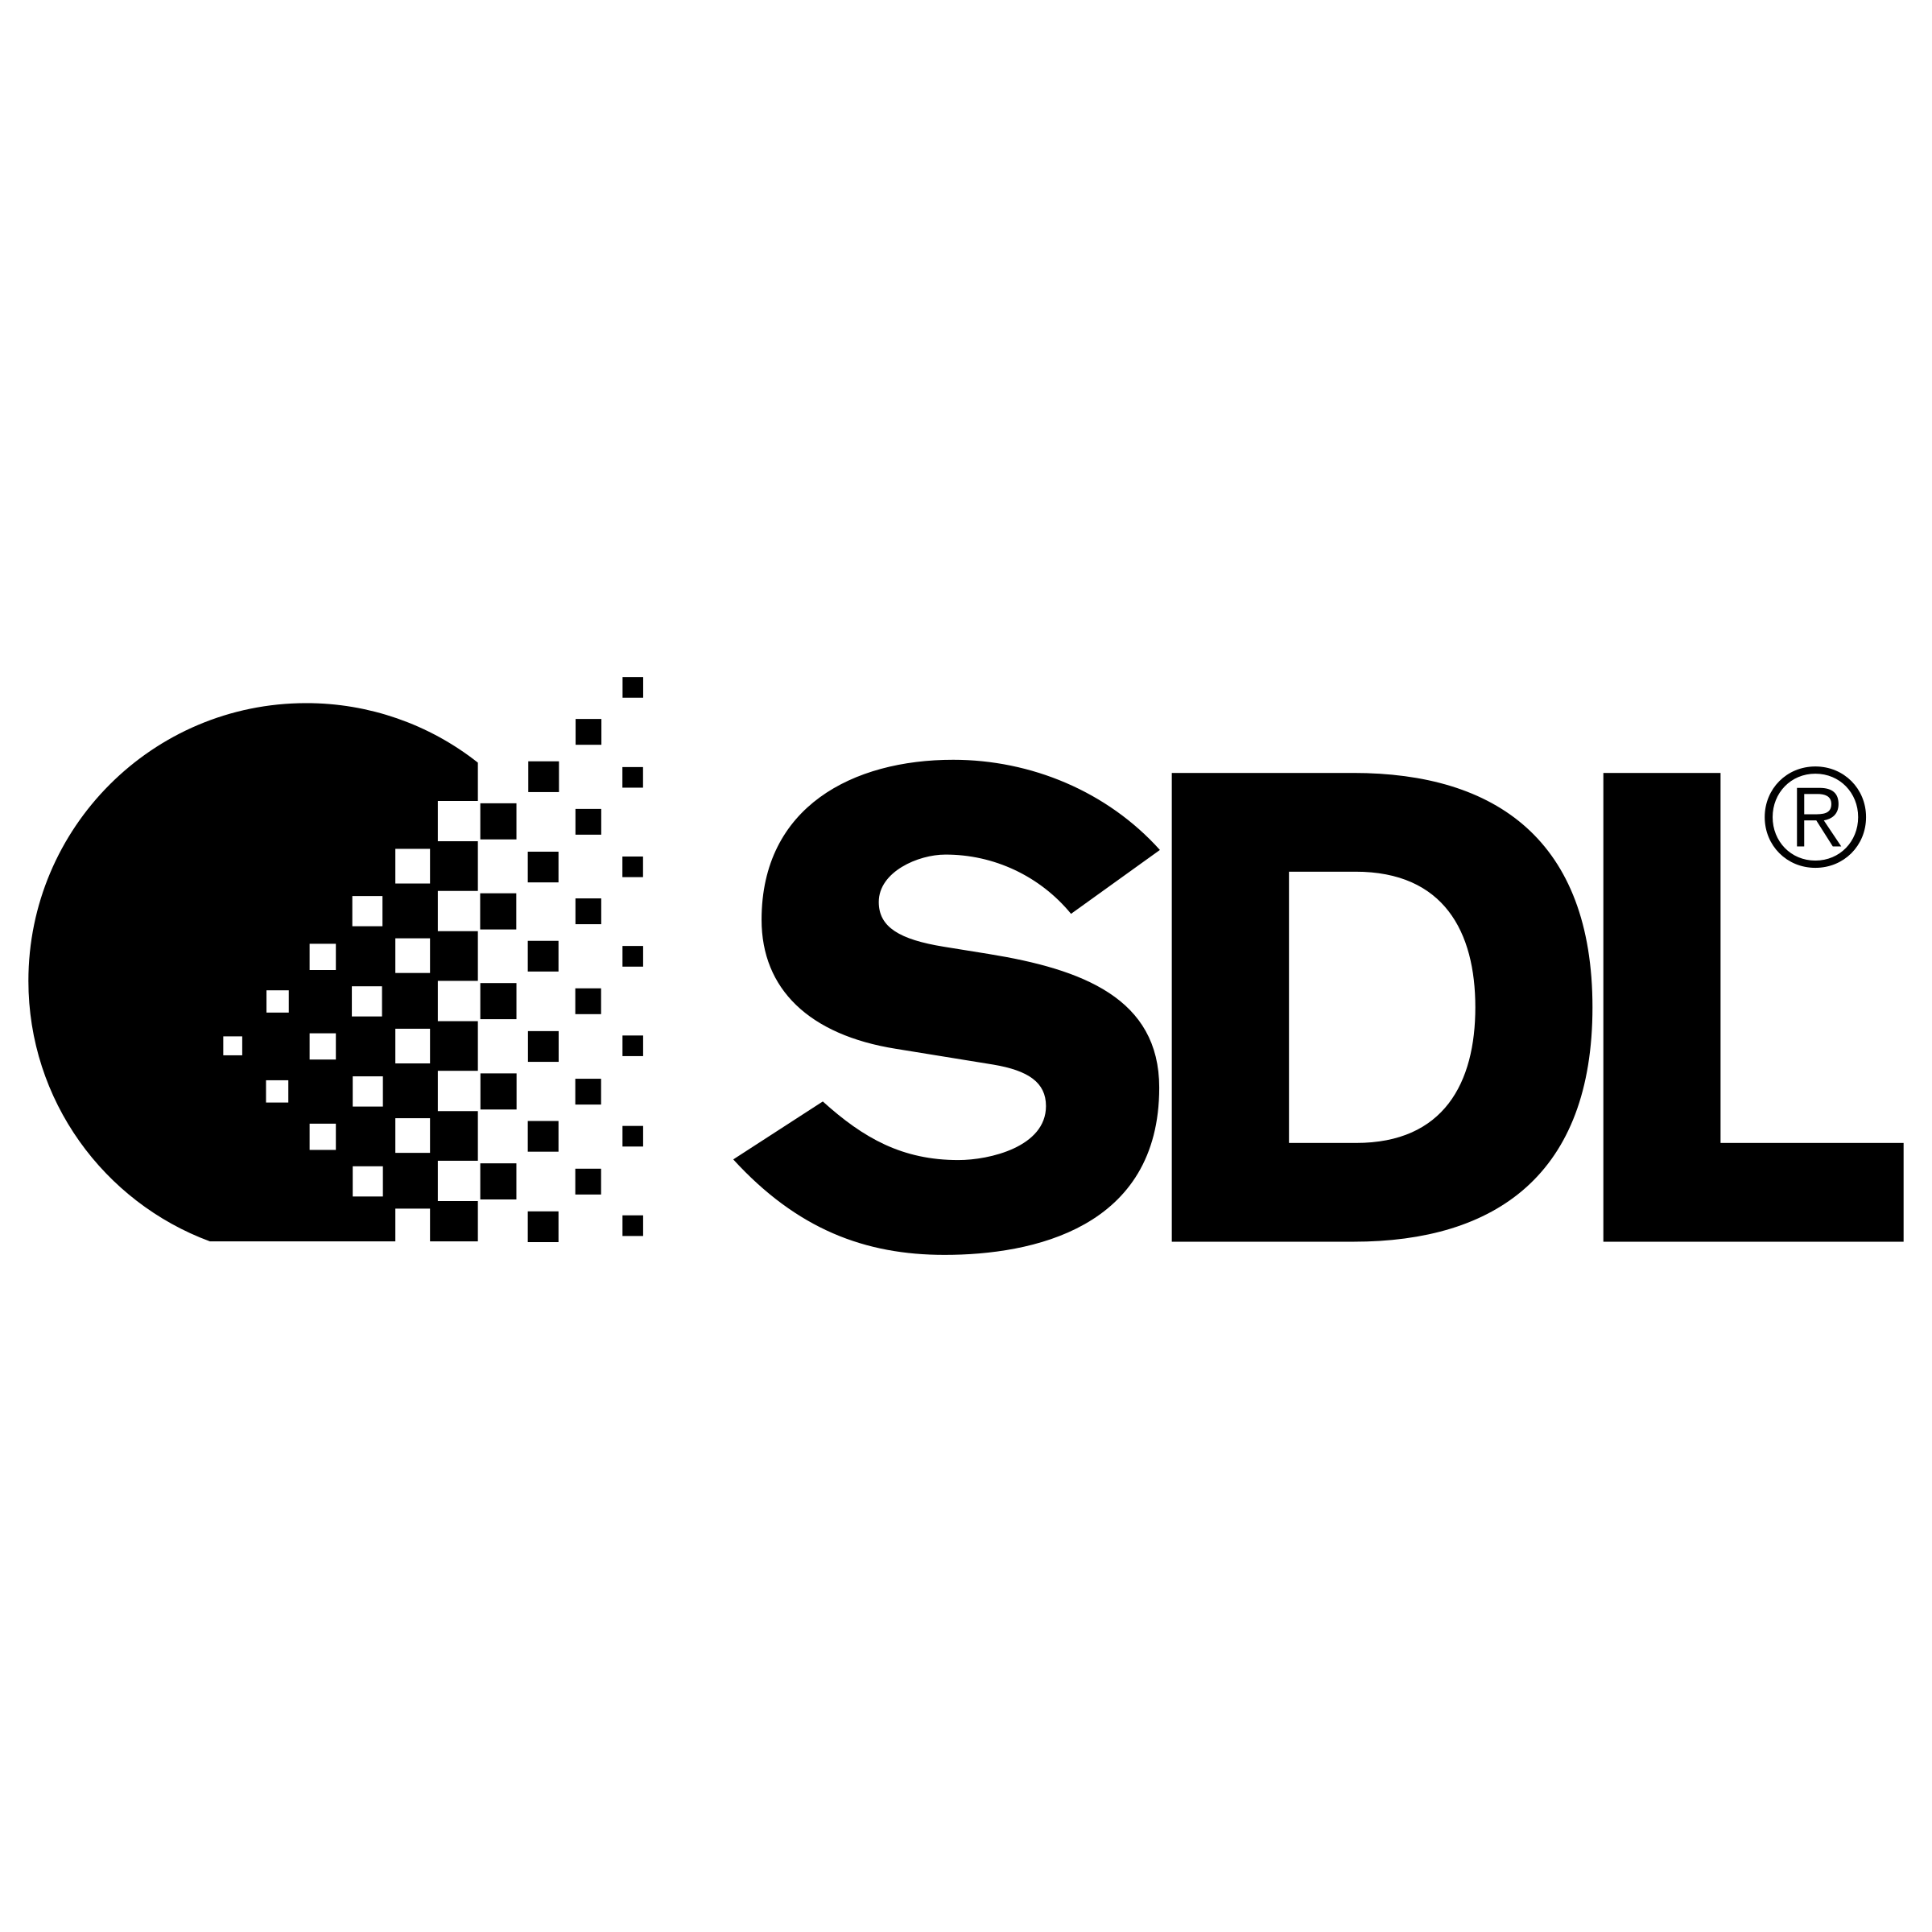 SDL Logo - SDL Logo PNG Transparent & SVG Vector